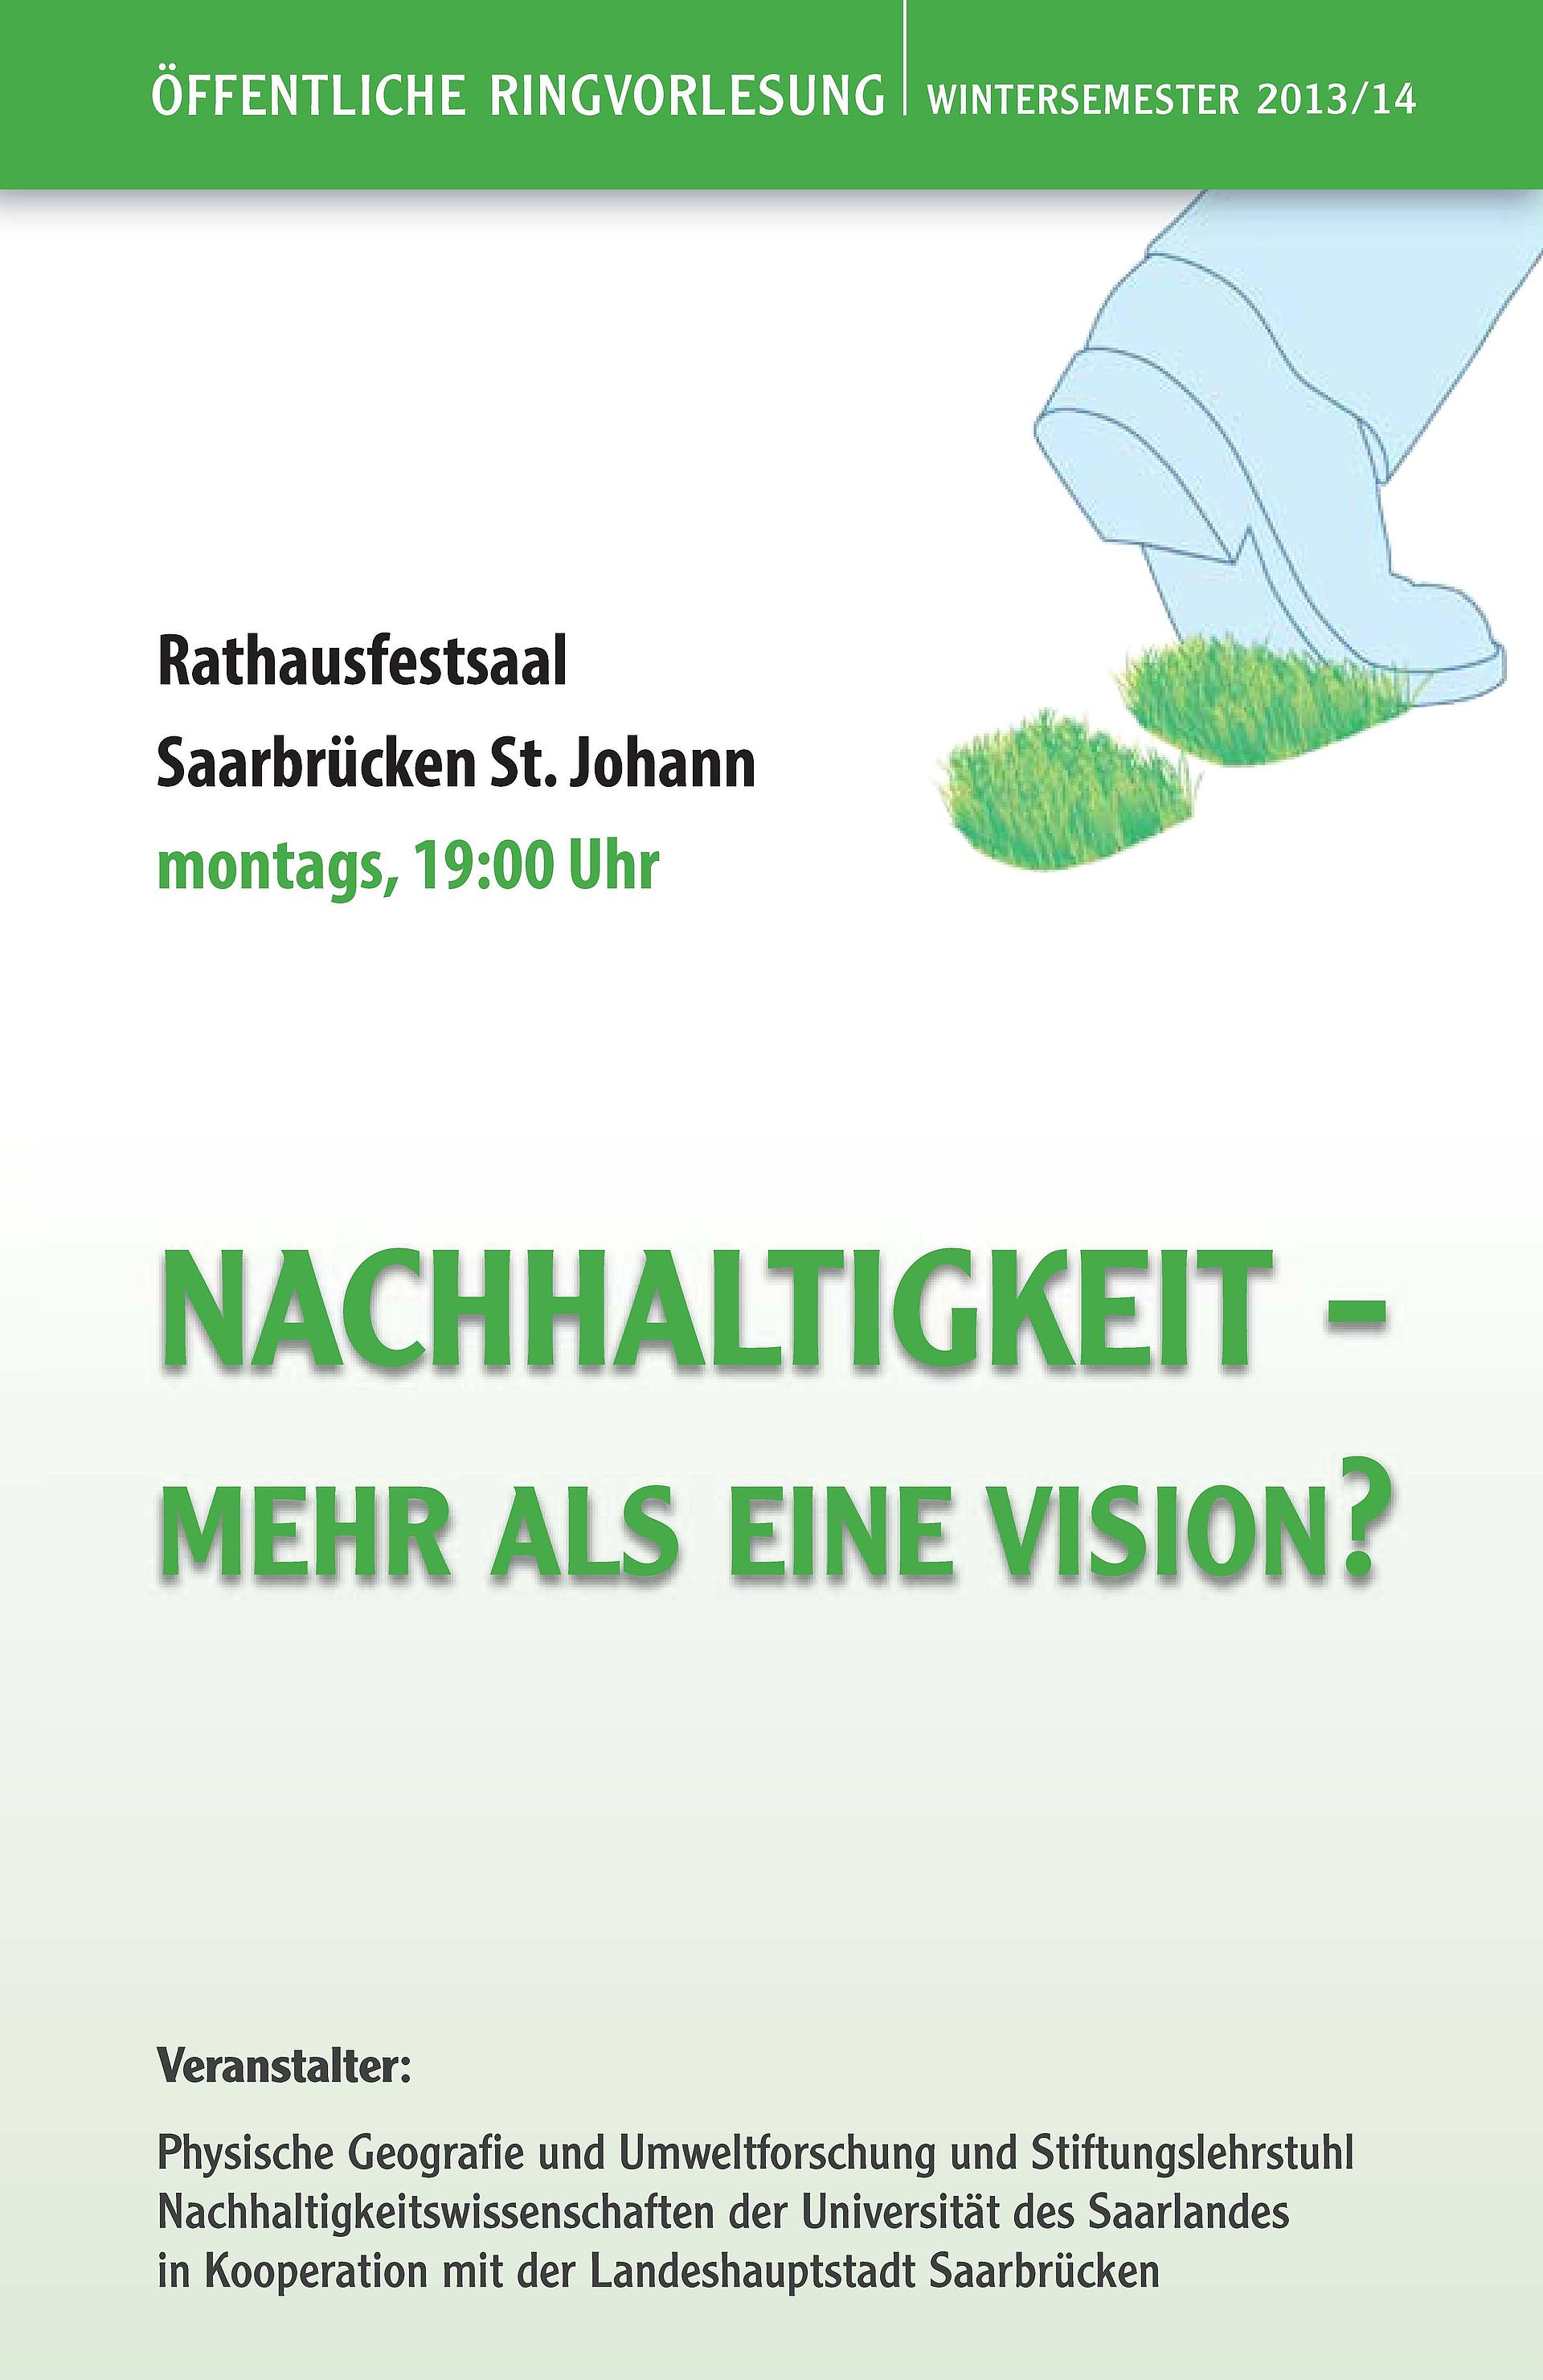 Werbeplakat der Ringvorlesung "Nachhaltigkeit - Mehr als eine Vision!?"